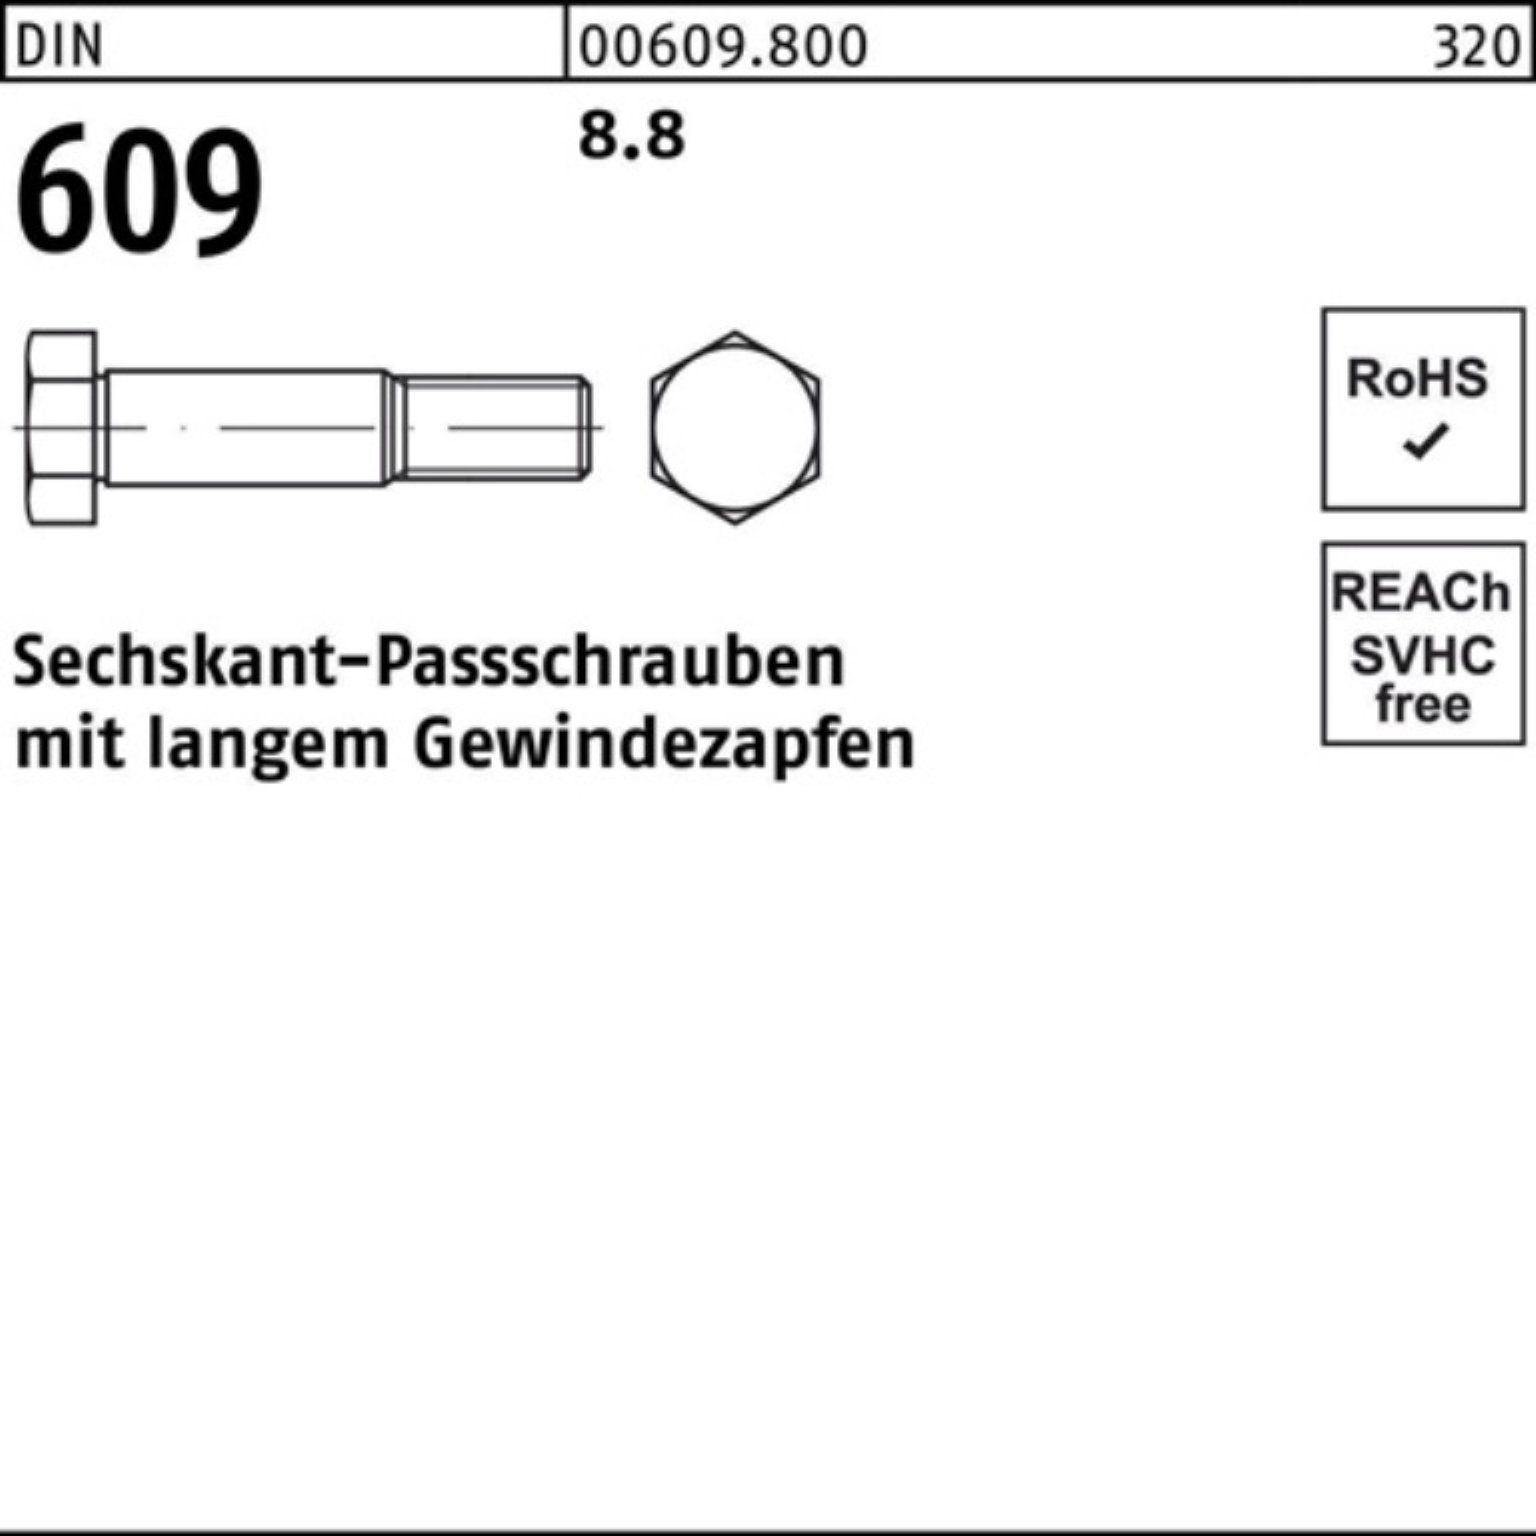 Sechskantpassschraube DIN 65 609 Pack langem Reyher Gewindezapfen 100er Schraube M24x